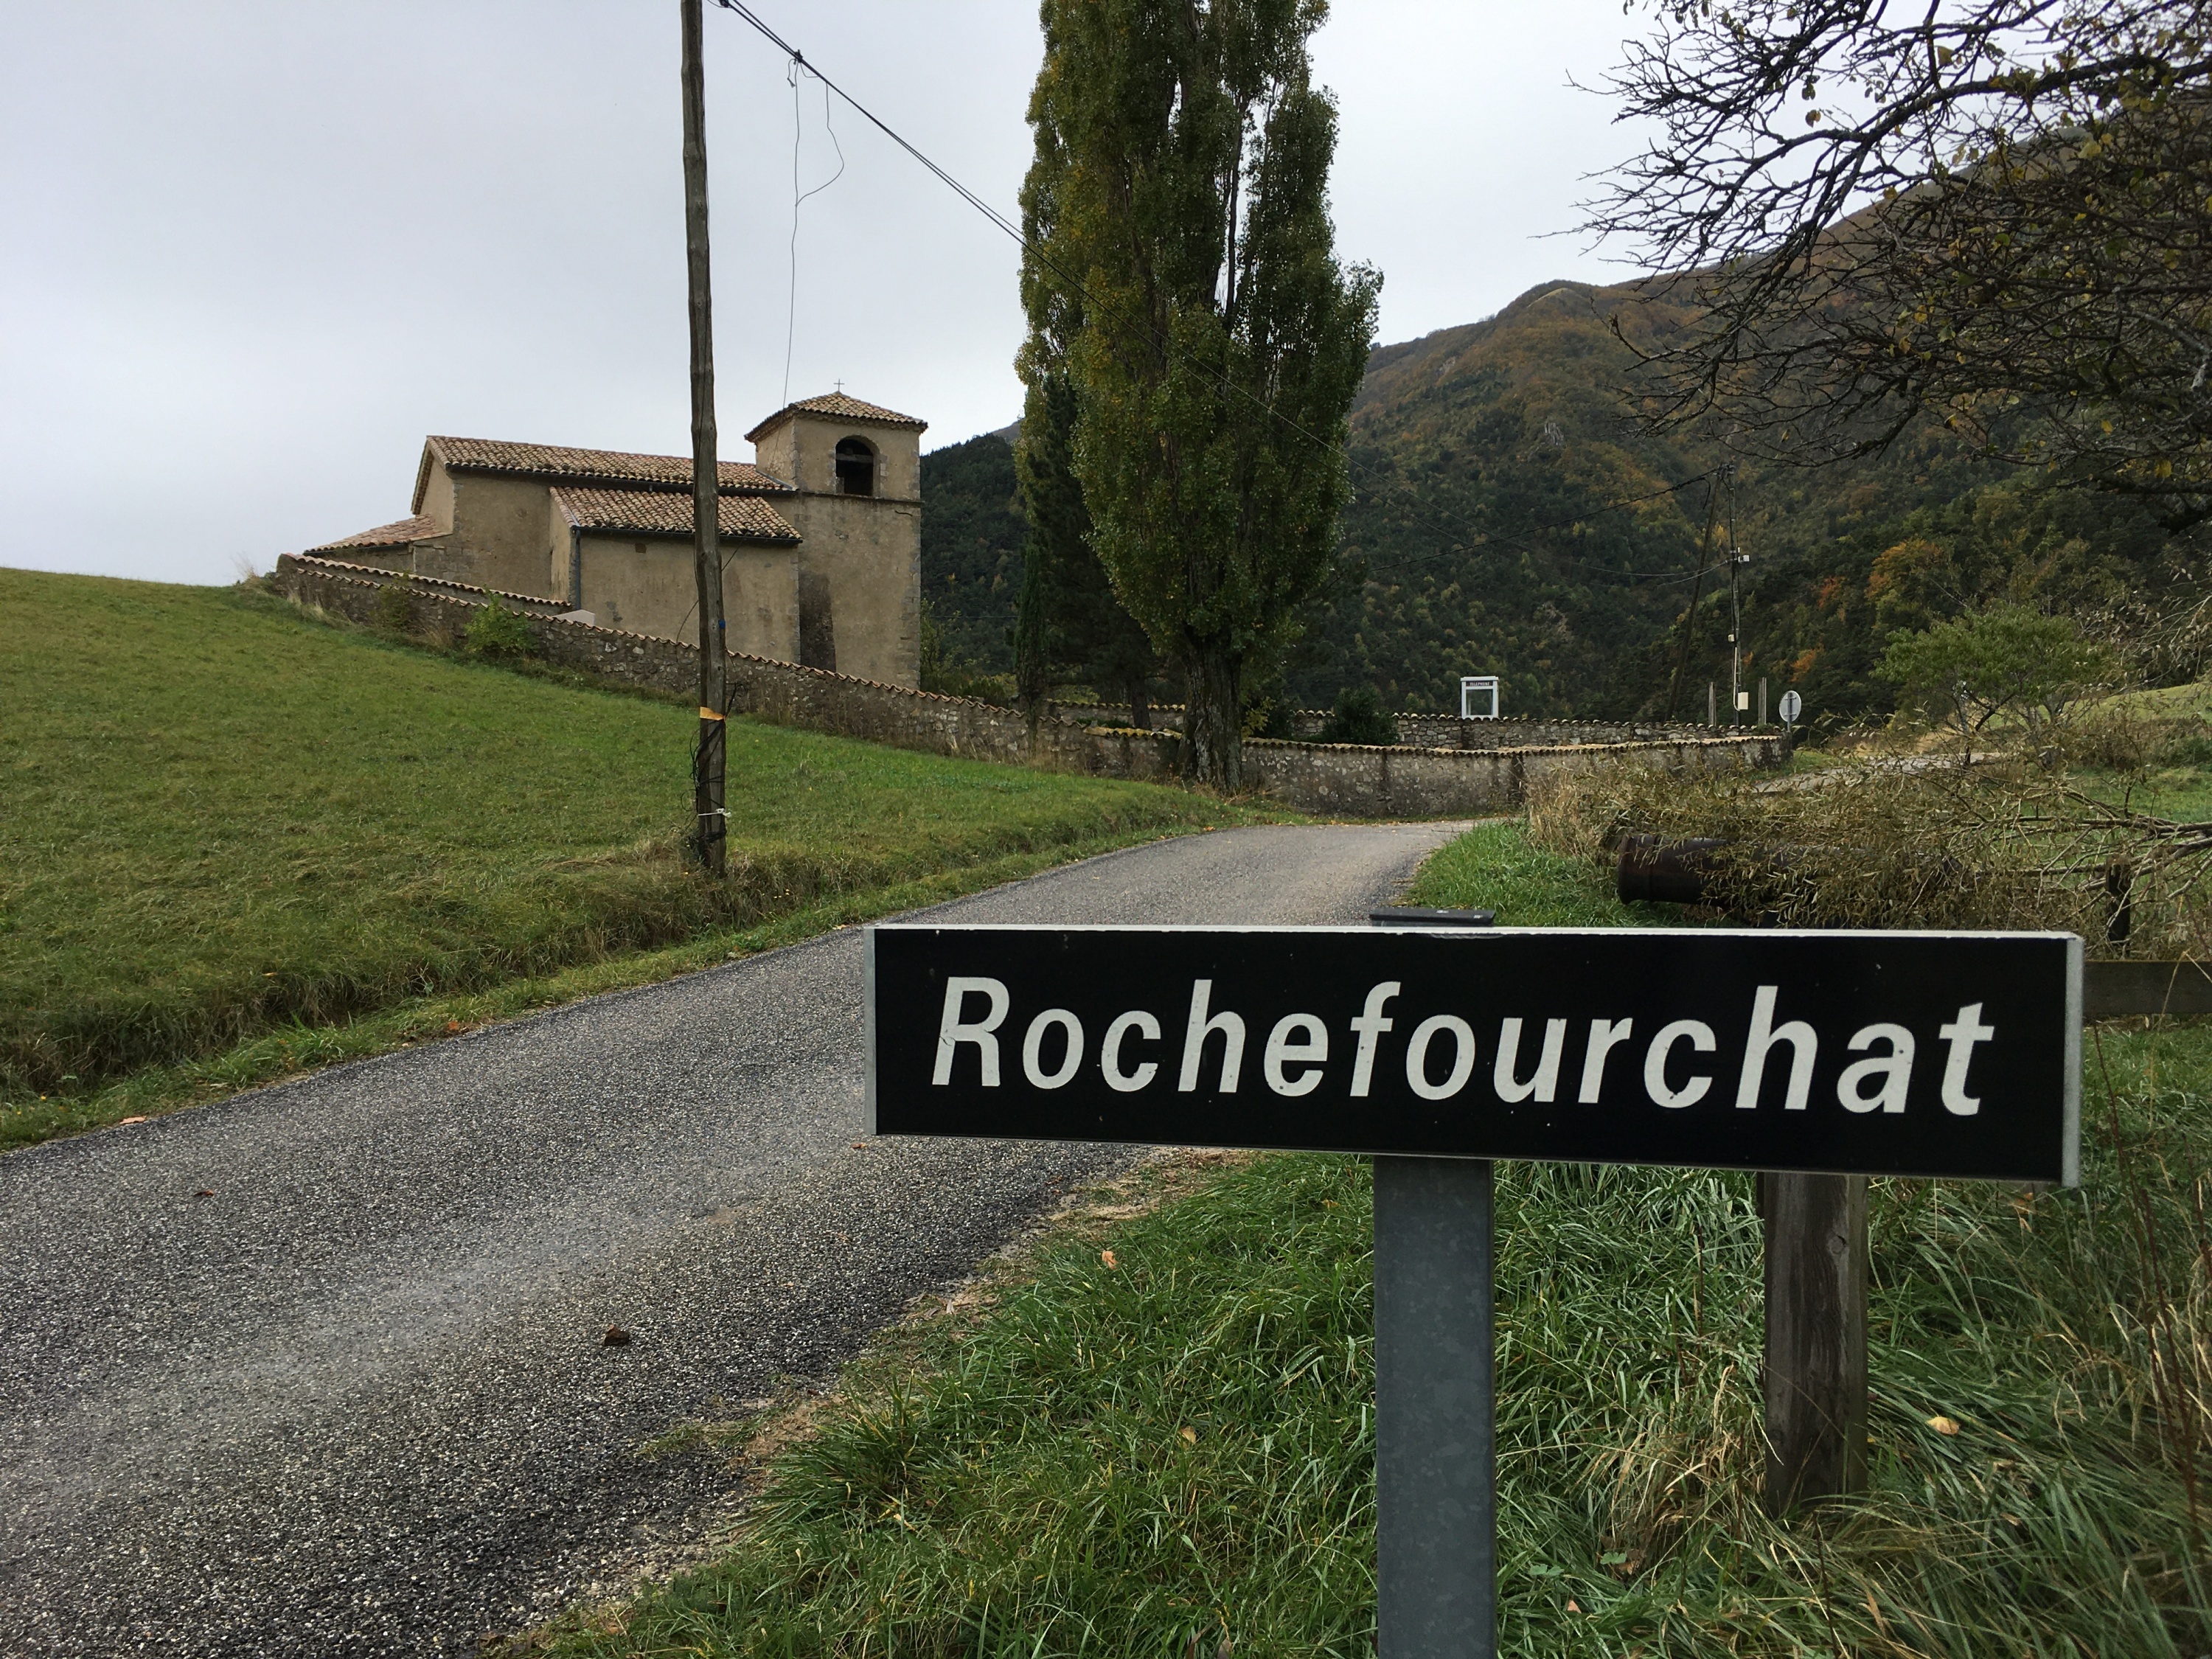 Je me suis retirée dans la montagne : à Rochefourchat, Josette, unique habitante du plus petit village de France